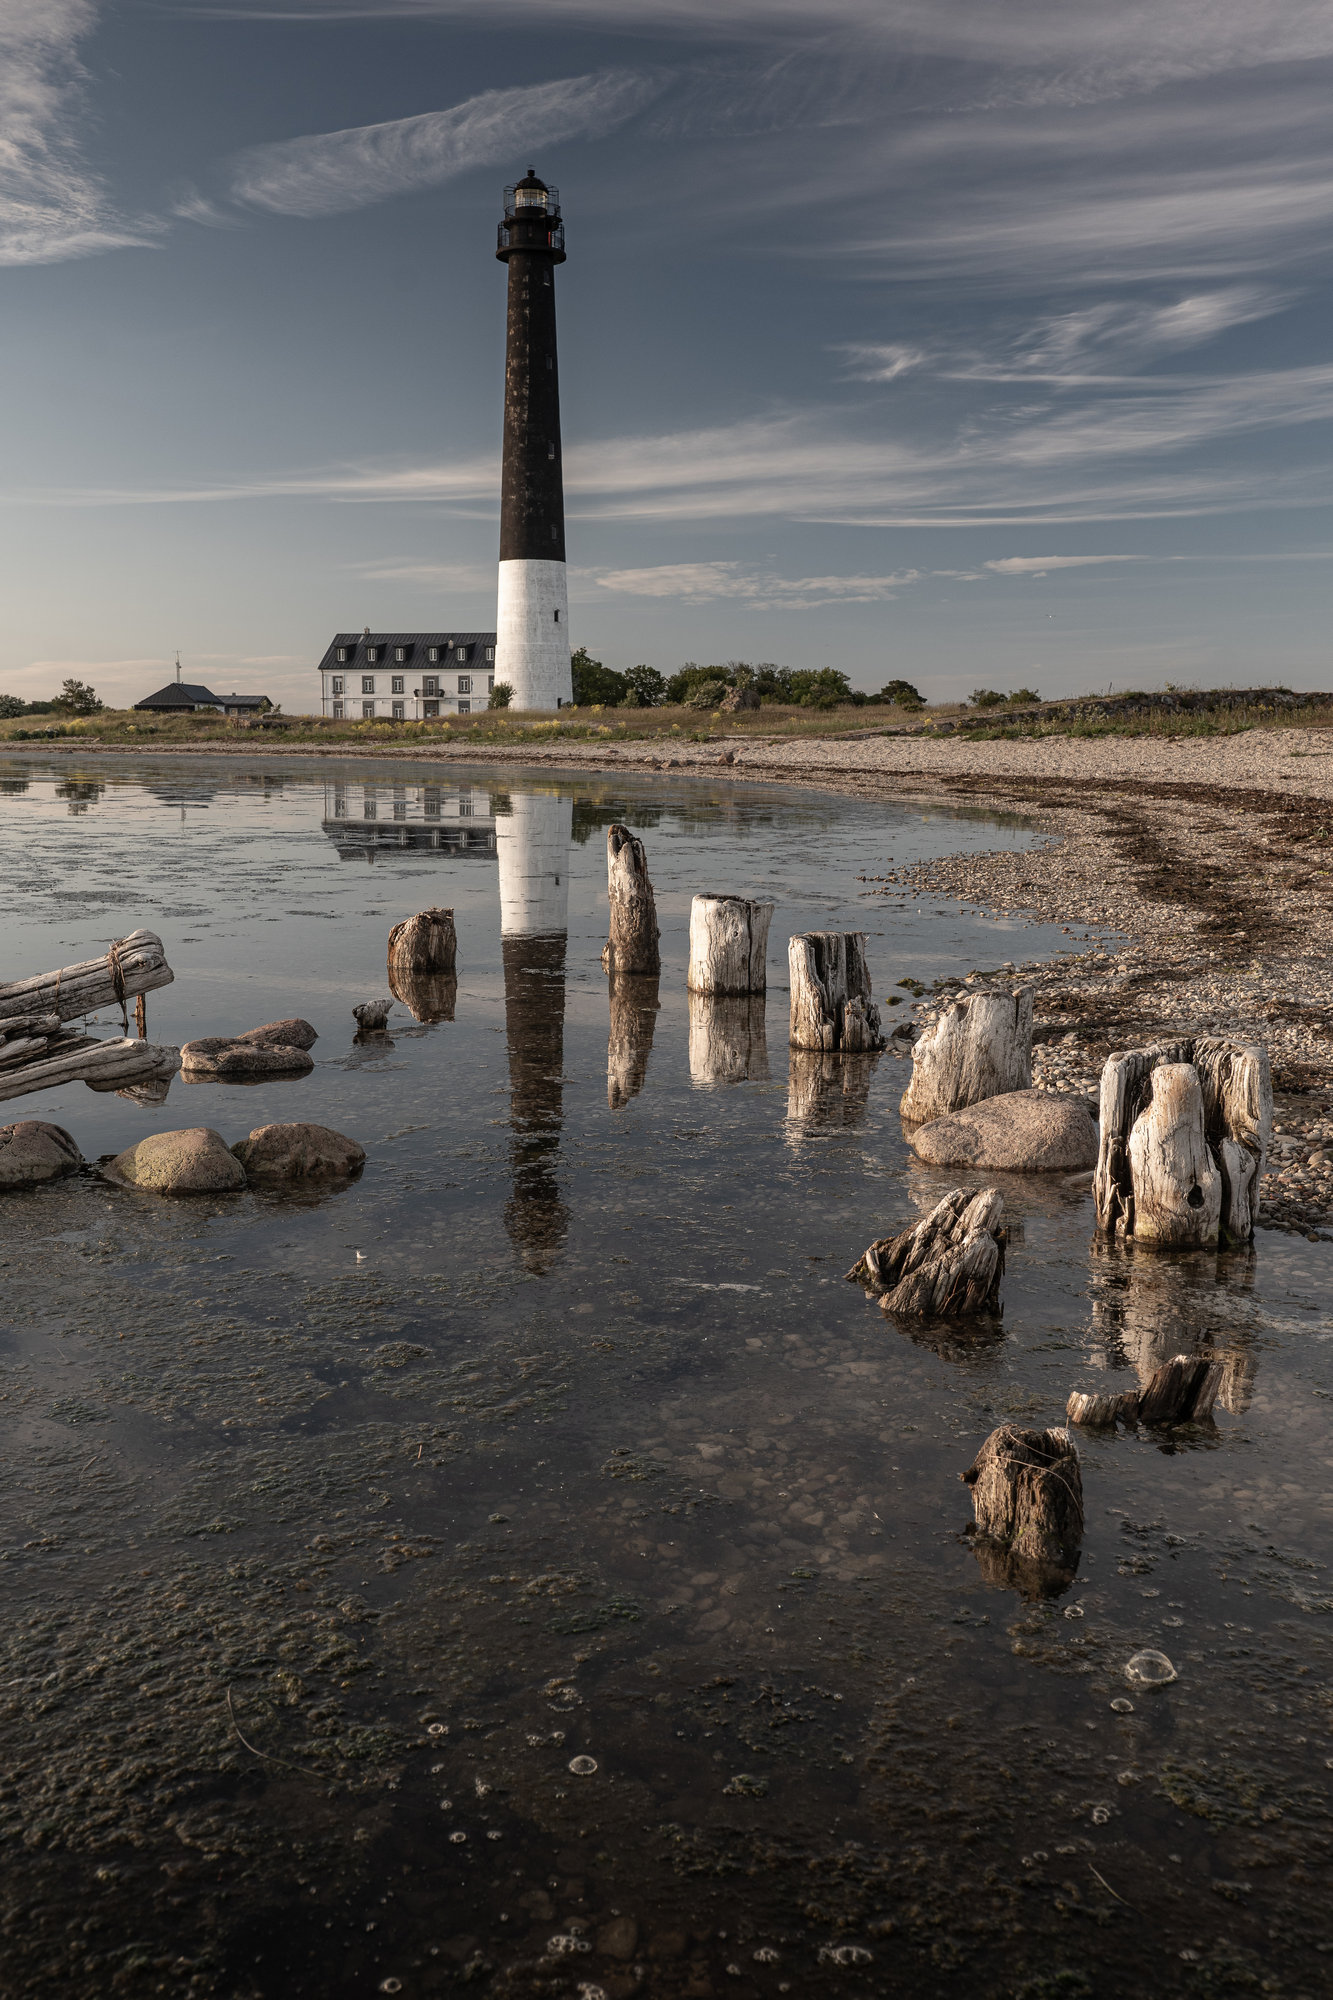 #sõrve #lighthouse #estonia, Nikolay Gordon